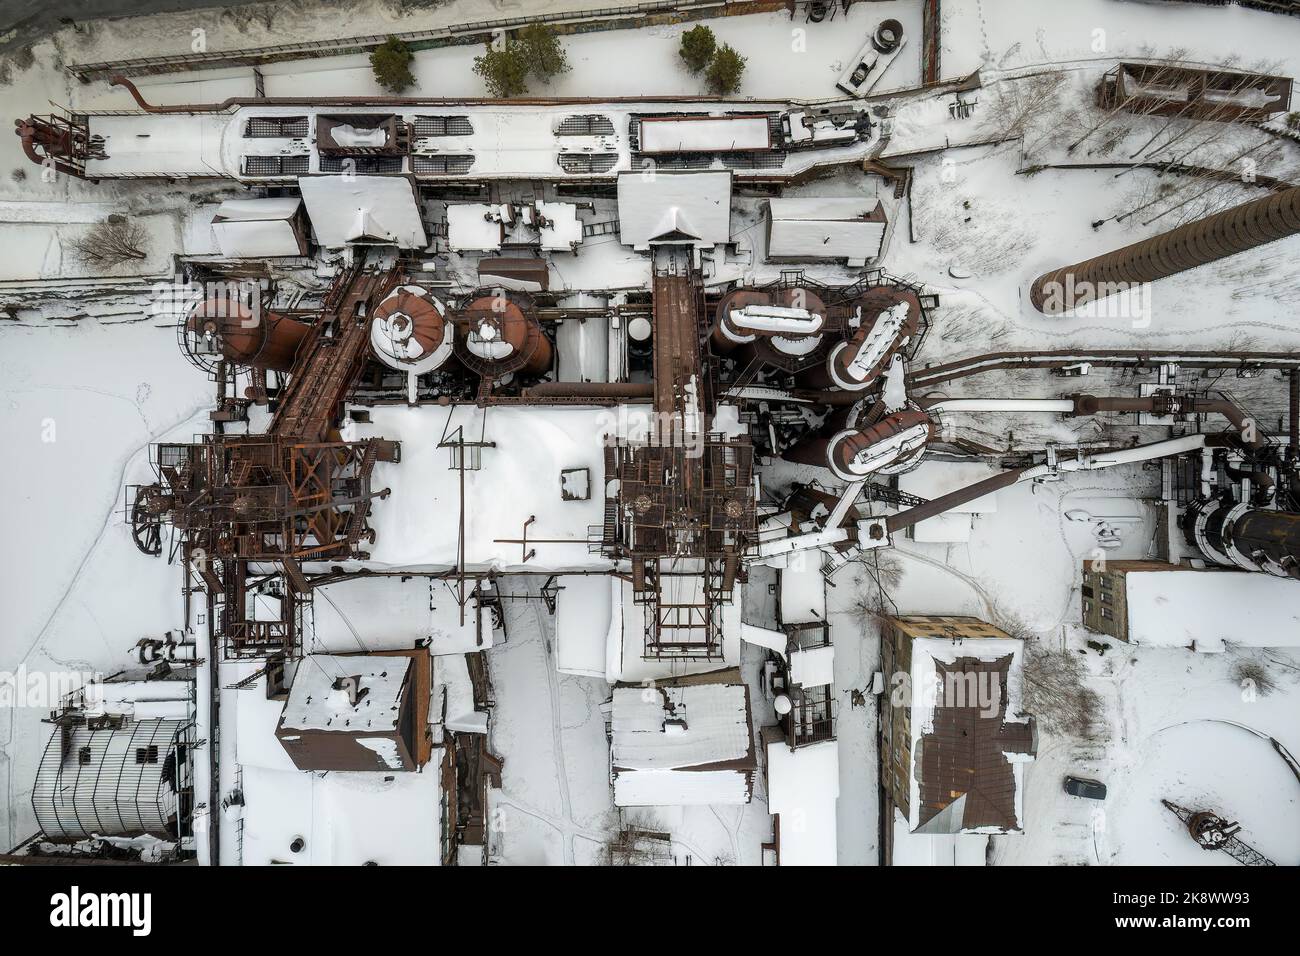 Demidows altes Werk in Nischni Tagil. Alte verlassene Metallurgieanlage am Wintertag. Luftaufnahme. Nischni Tagil, Russland Stockfoto